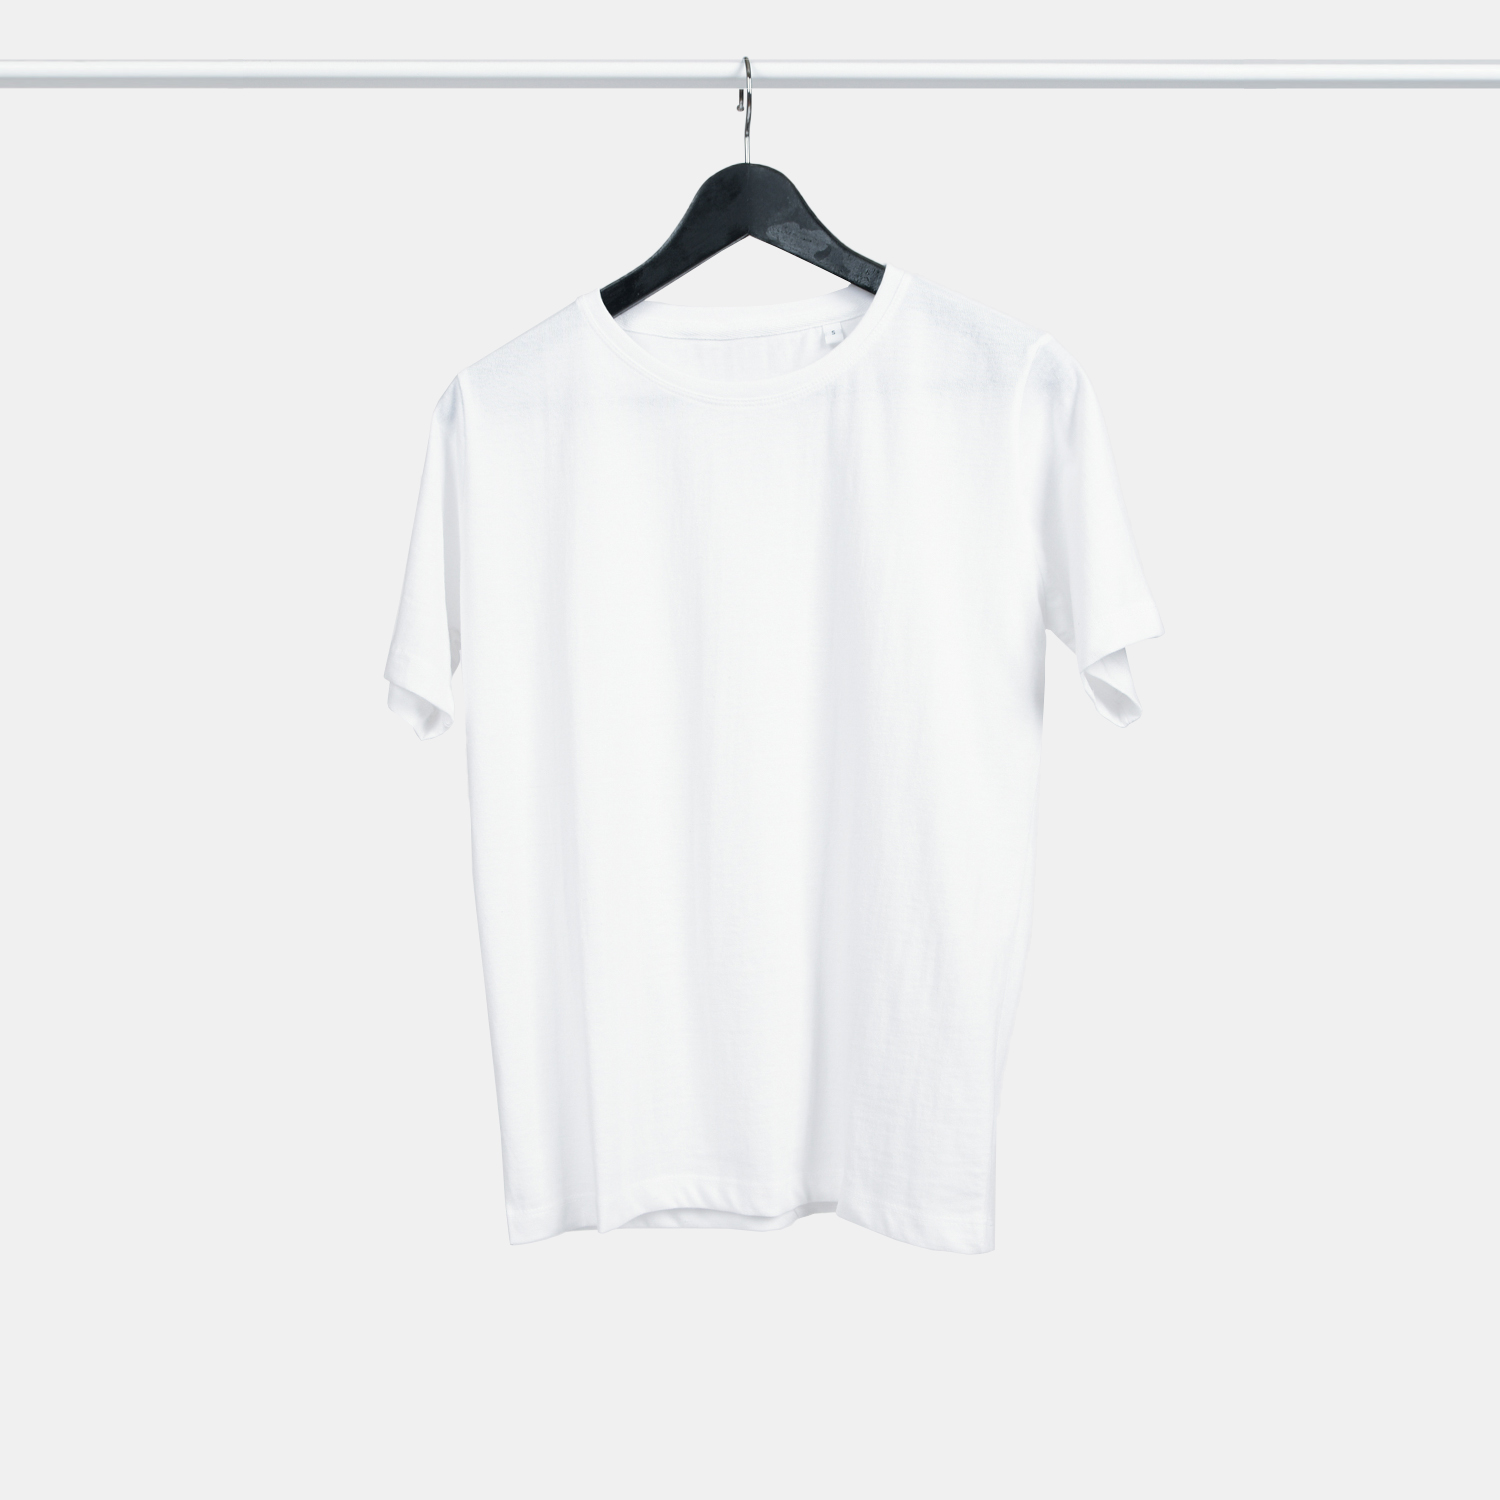 Genanvendt T-shirt i hvid til kvinder fra A-PIONEER